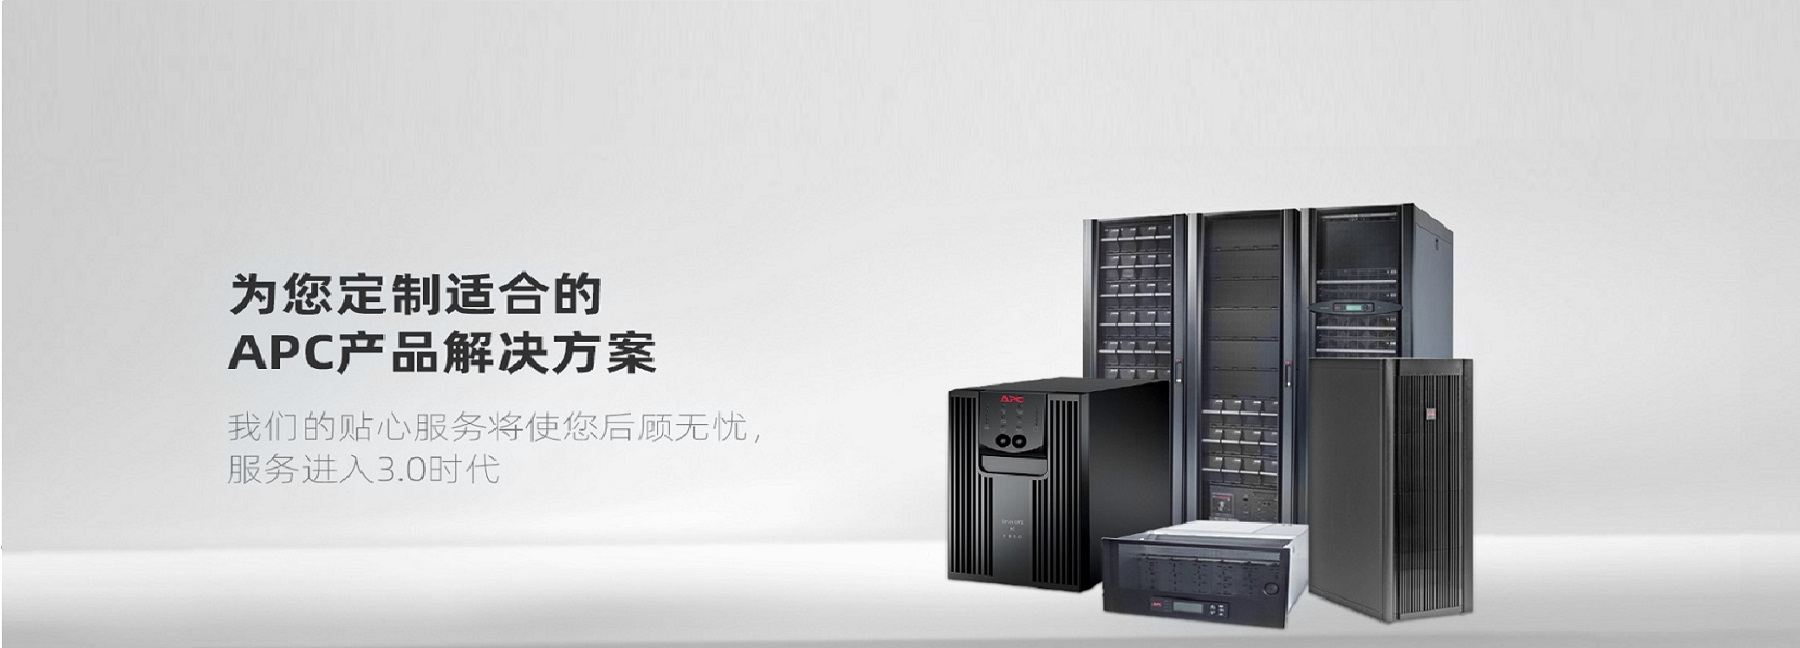 施耐德UPS电源--上海烜奕电源科技有限公司